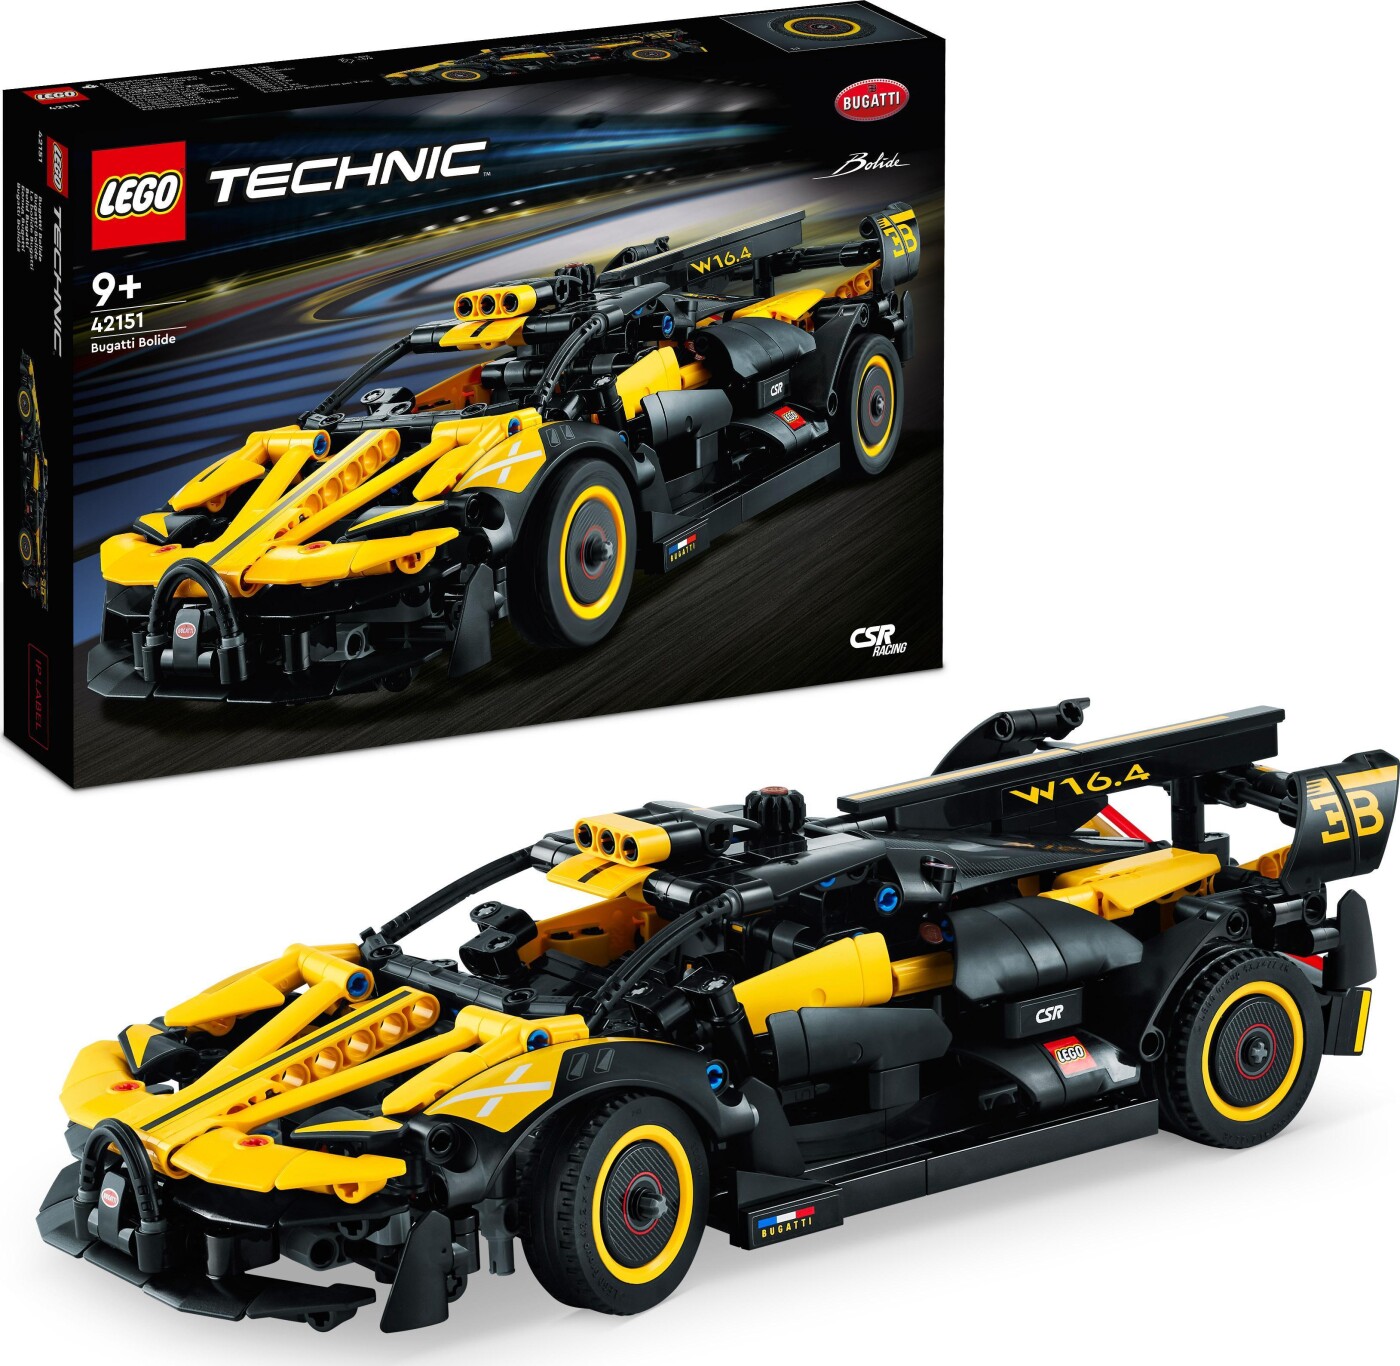 Billede af Lego Technic - Bugatti Bolide Bil - 42151 hos Gucca.dk